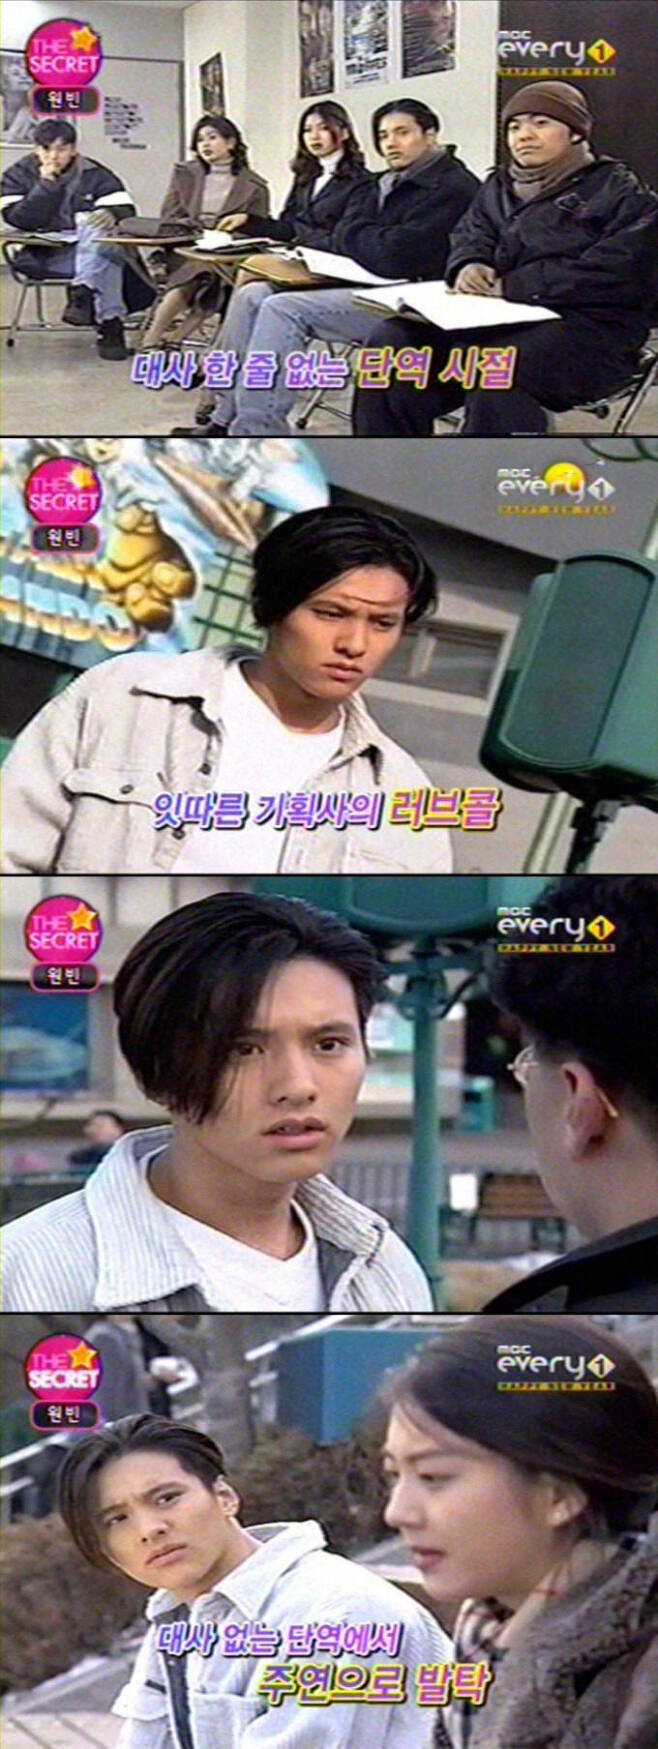 출처: MBC every1 <스타더시크릿>